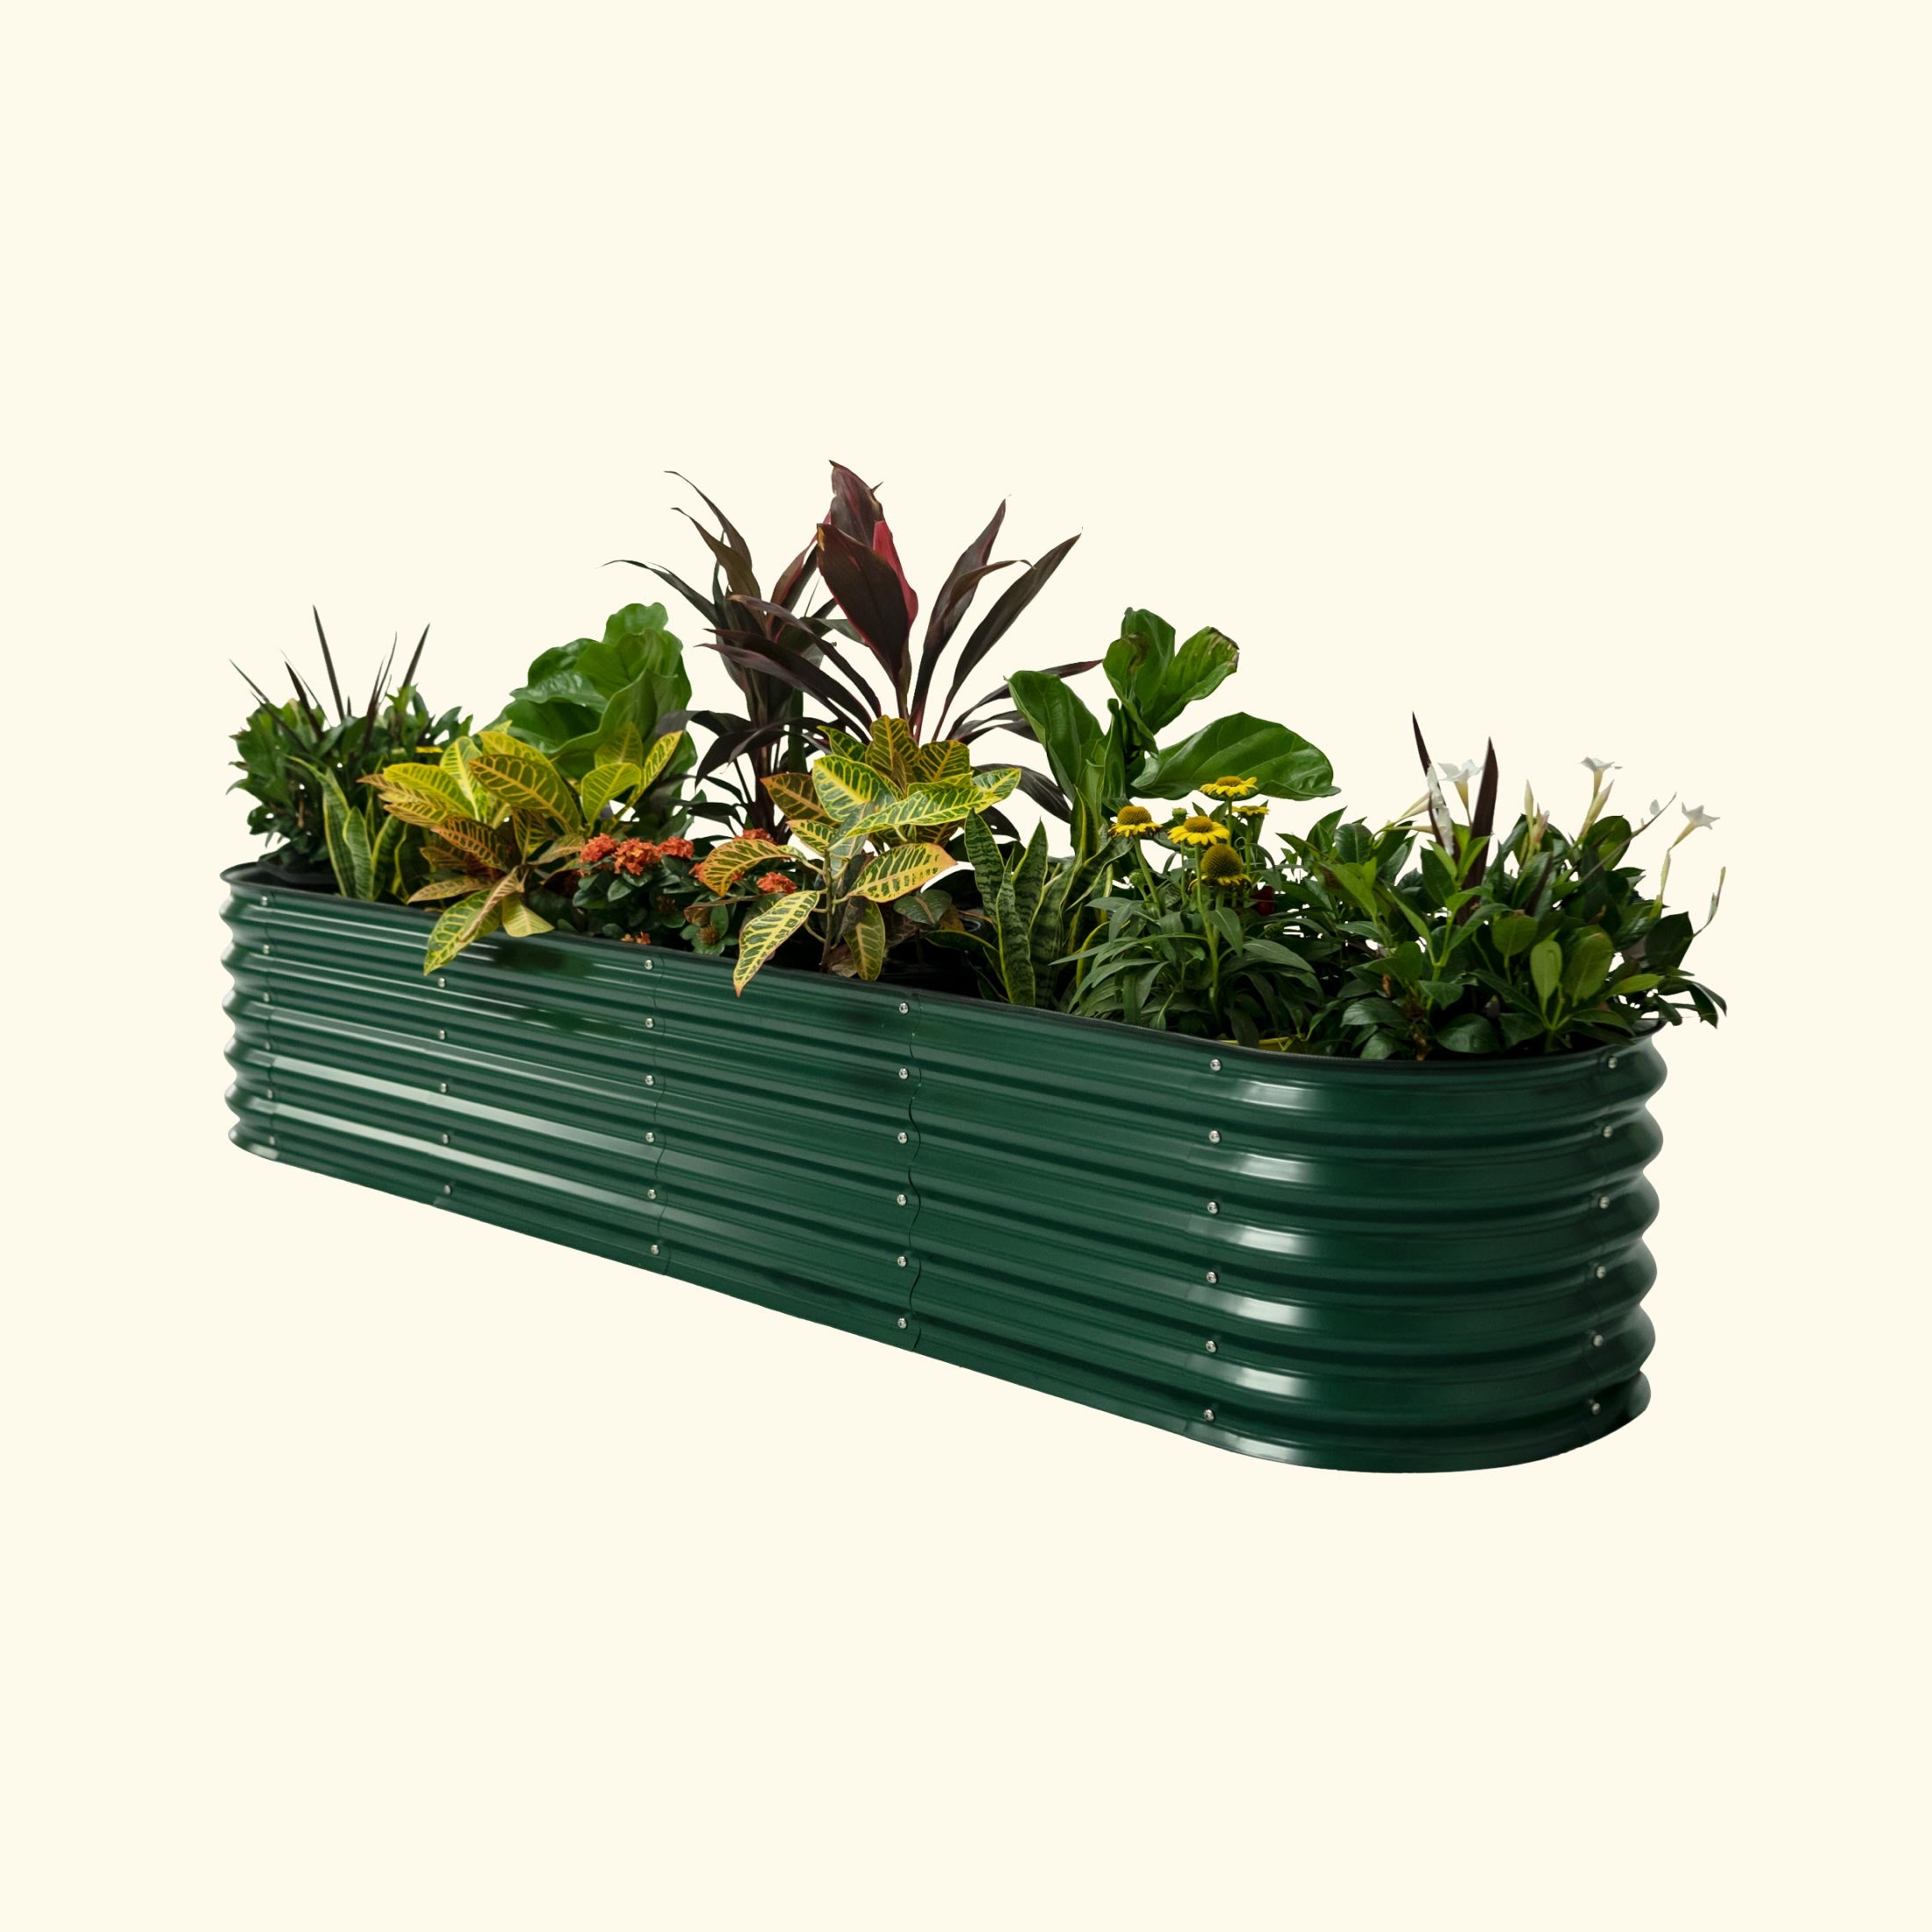 Self-Watering Garden Bed